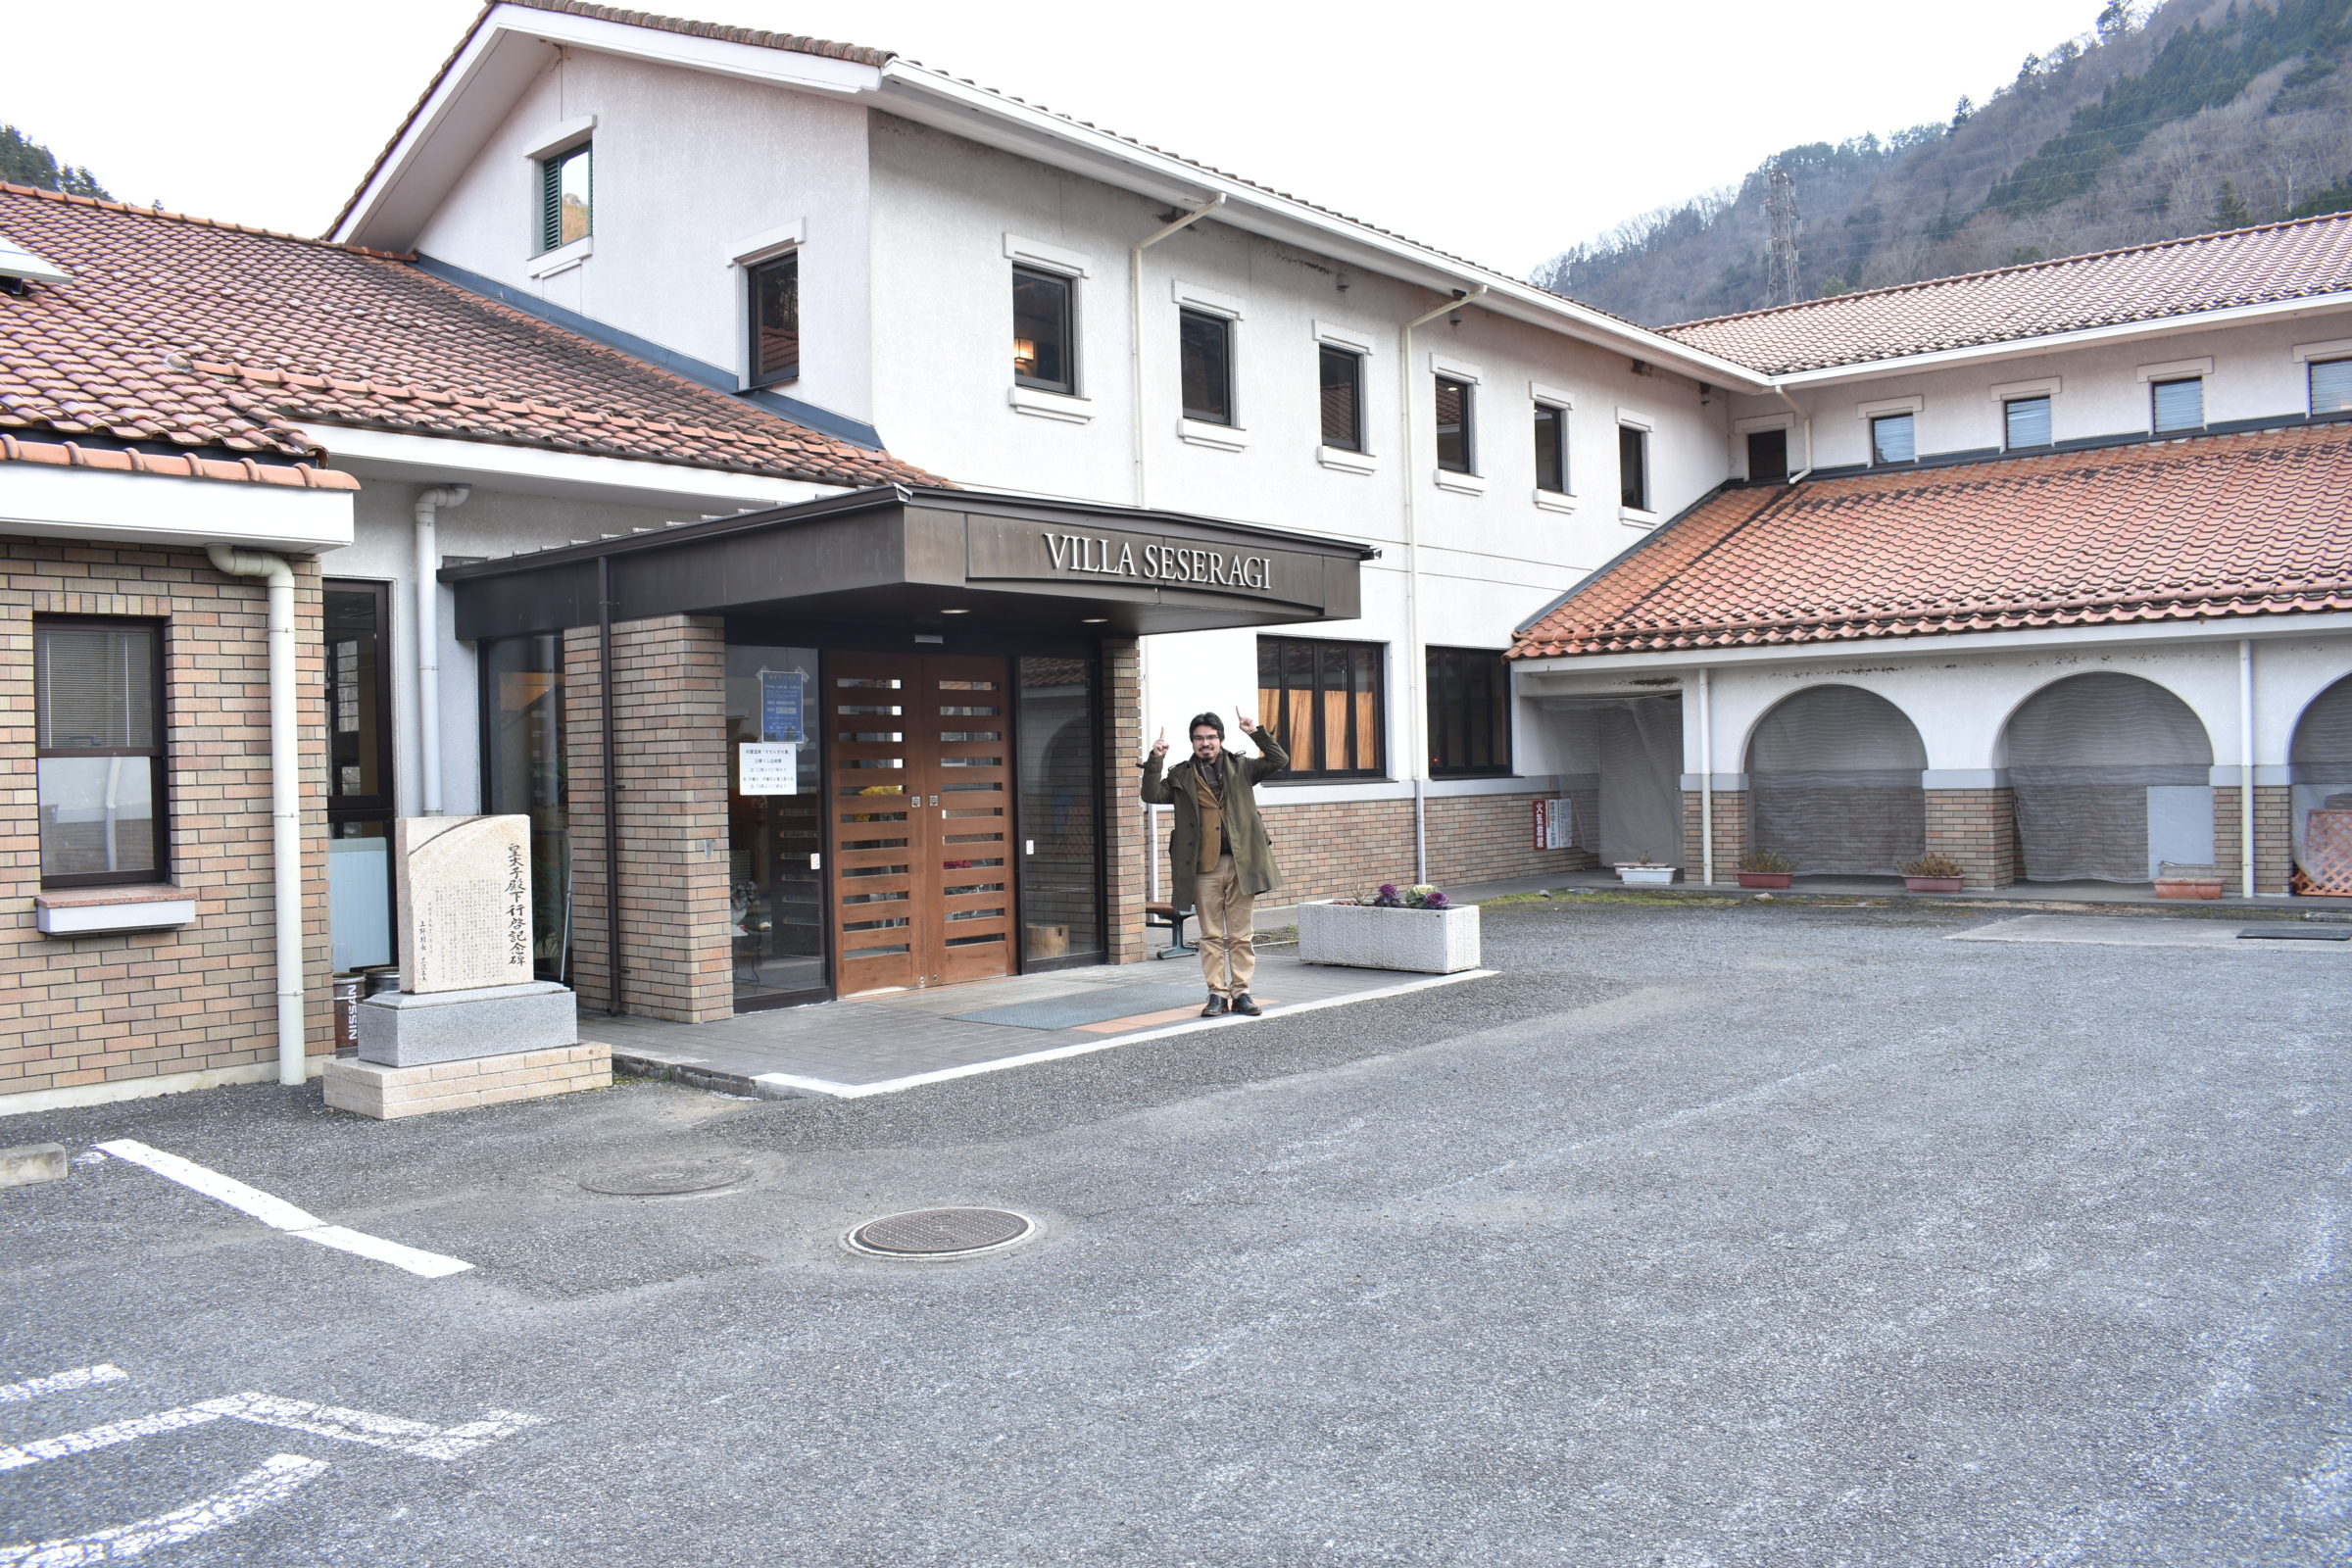 Villa Seseragi and Koya Onsen